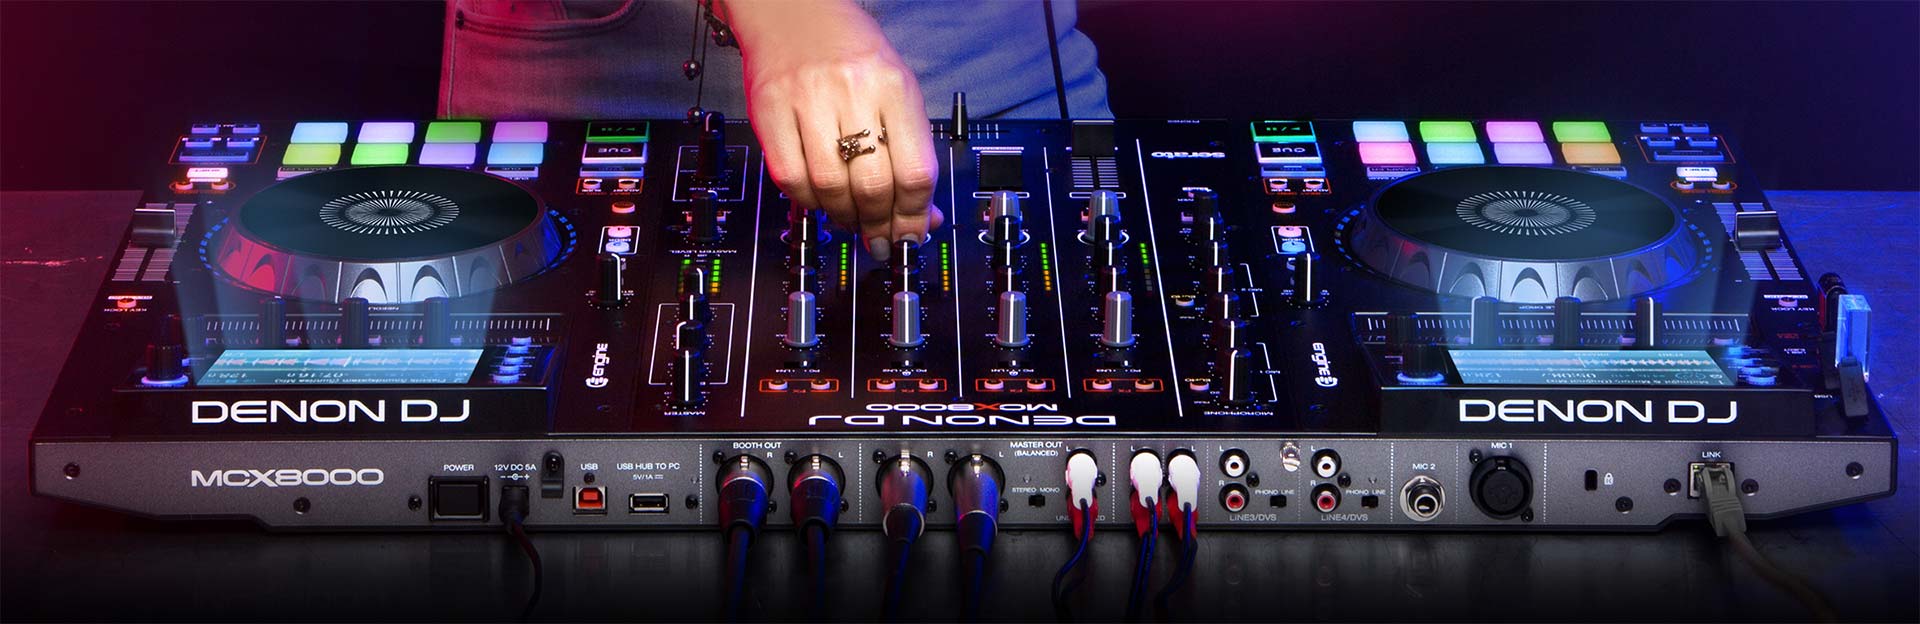 MCX8000 | Serato DJ Controller | Denon DJ